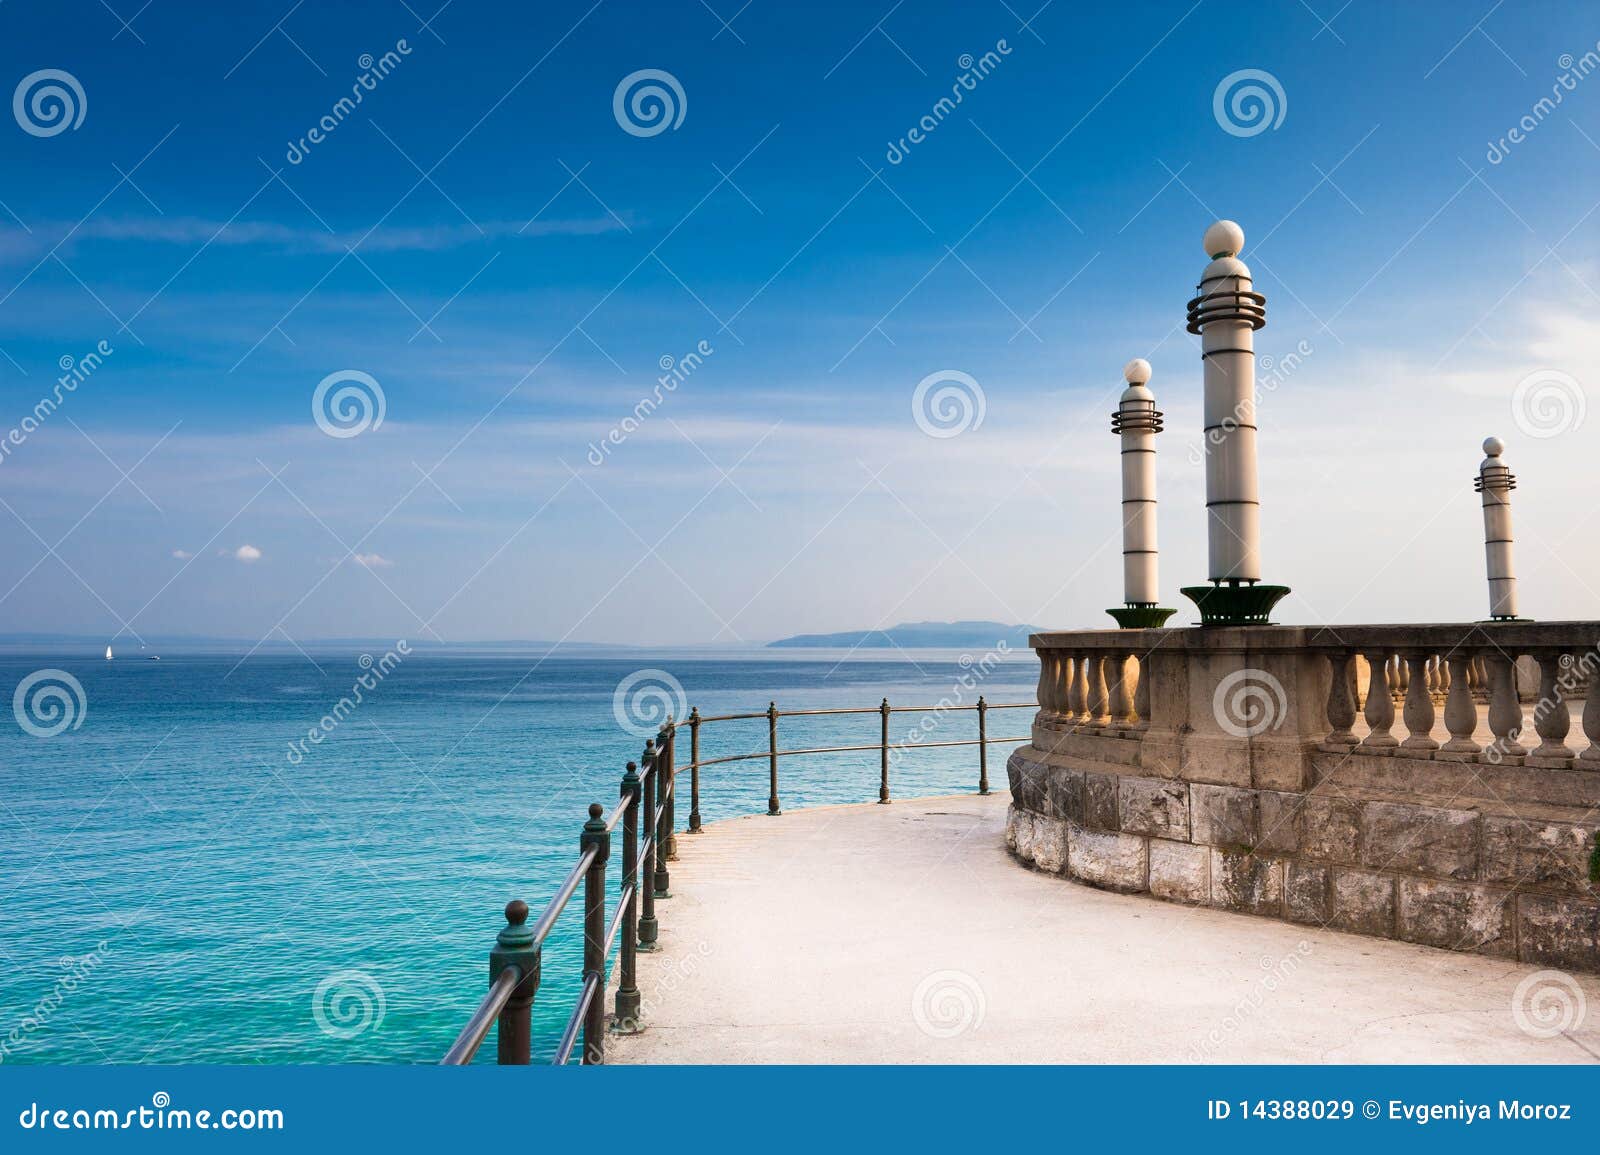 adriatic sea scenic view